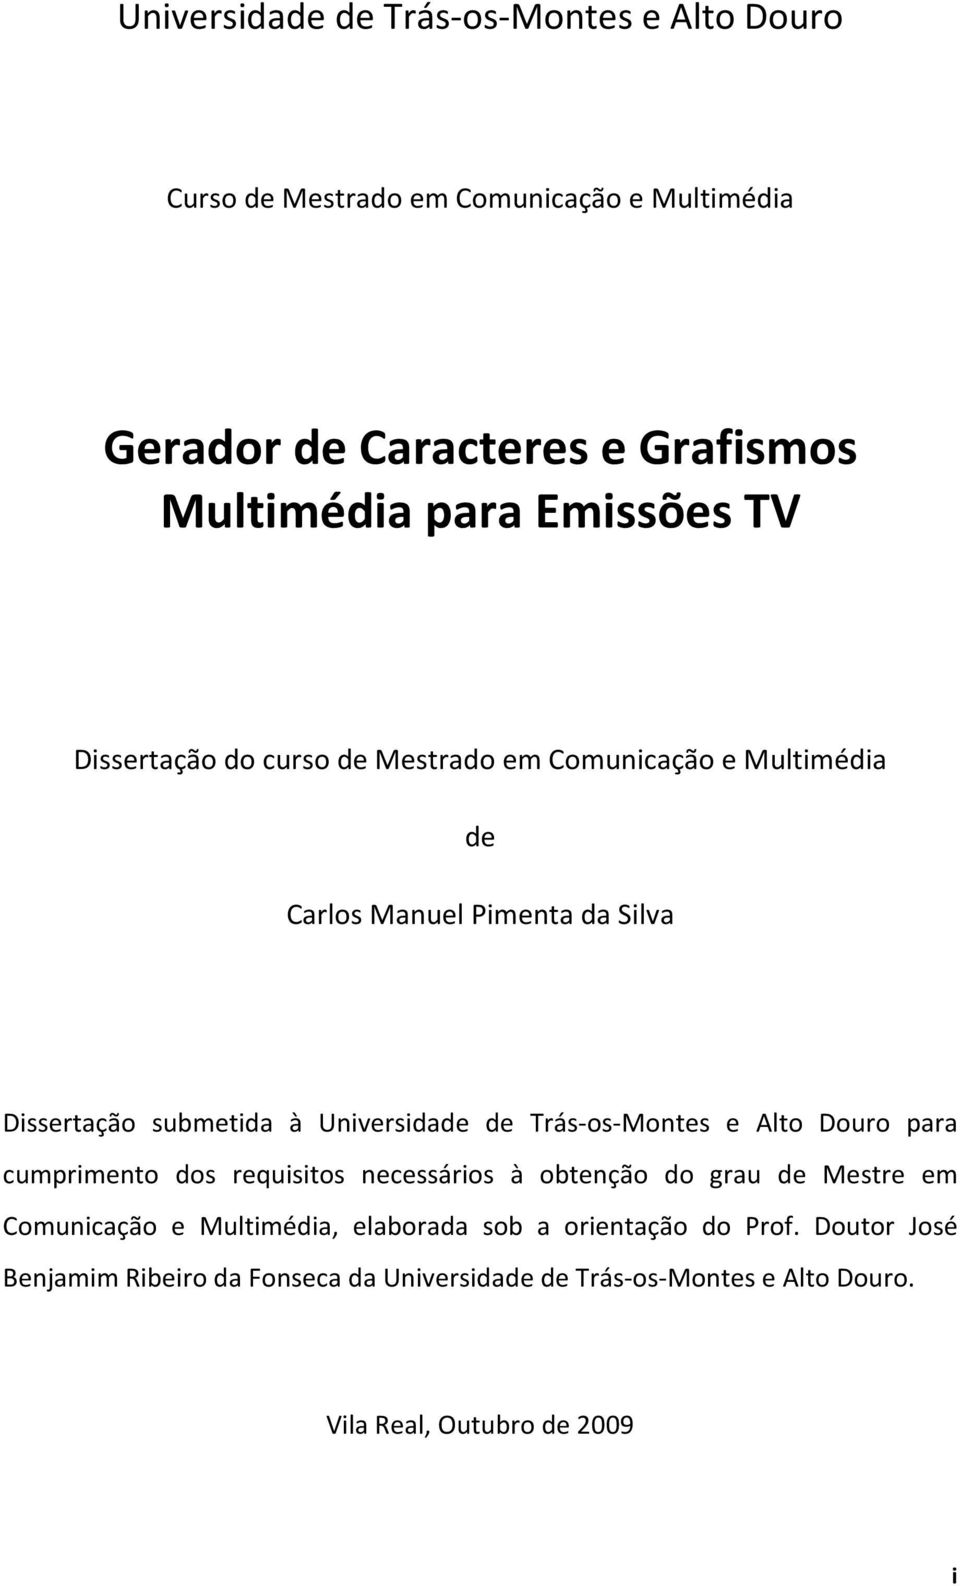 Universidade de Trás-os-Montes e Alto Douro para cumprimento dos requisitos necessários à obtenção do grau de Mestre em Comunicação e